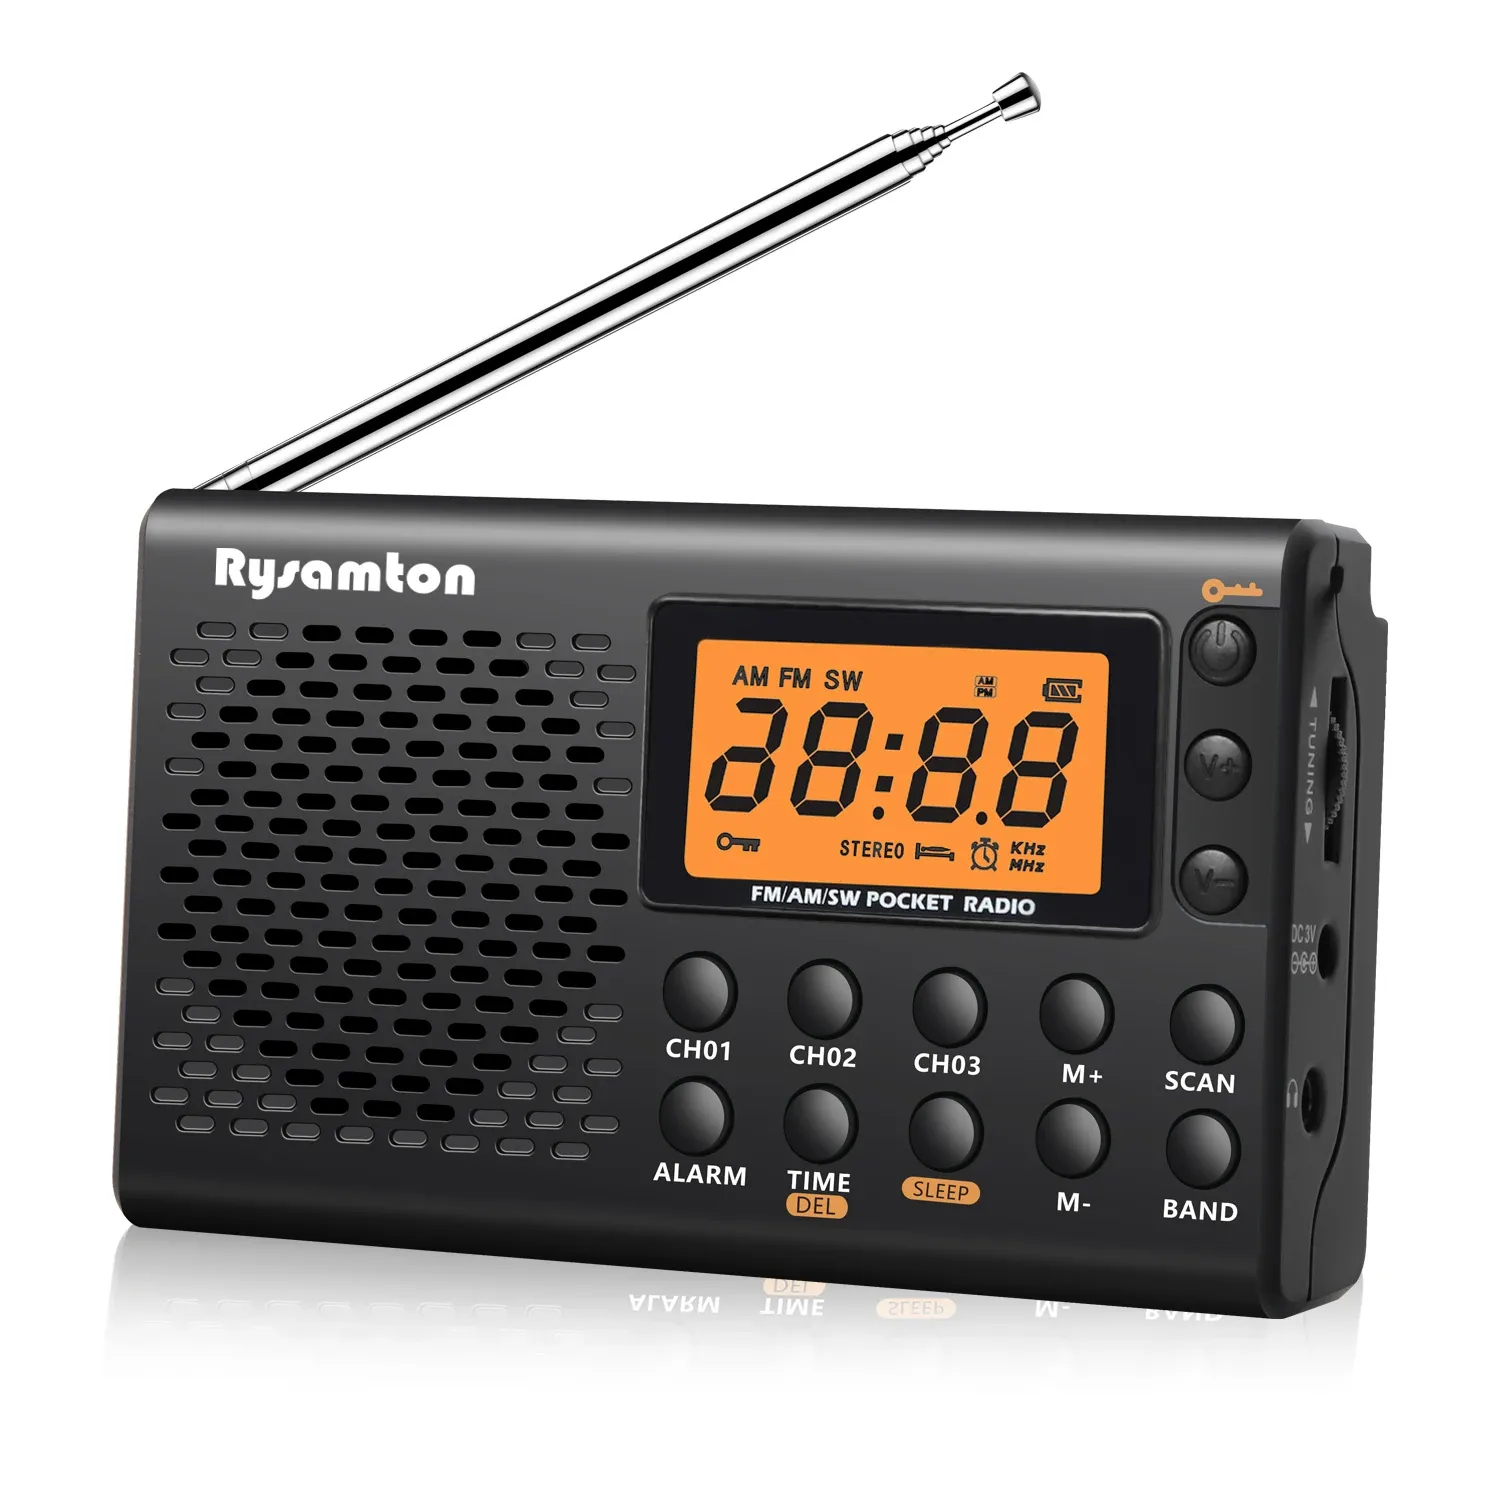 Radio joReK Portable AM/FM ShortWave Radio Big Digital wyświetlacz z timerem snu i funkcją budzik, radia obsługiwane baterią